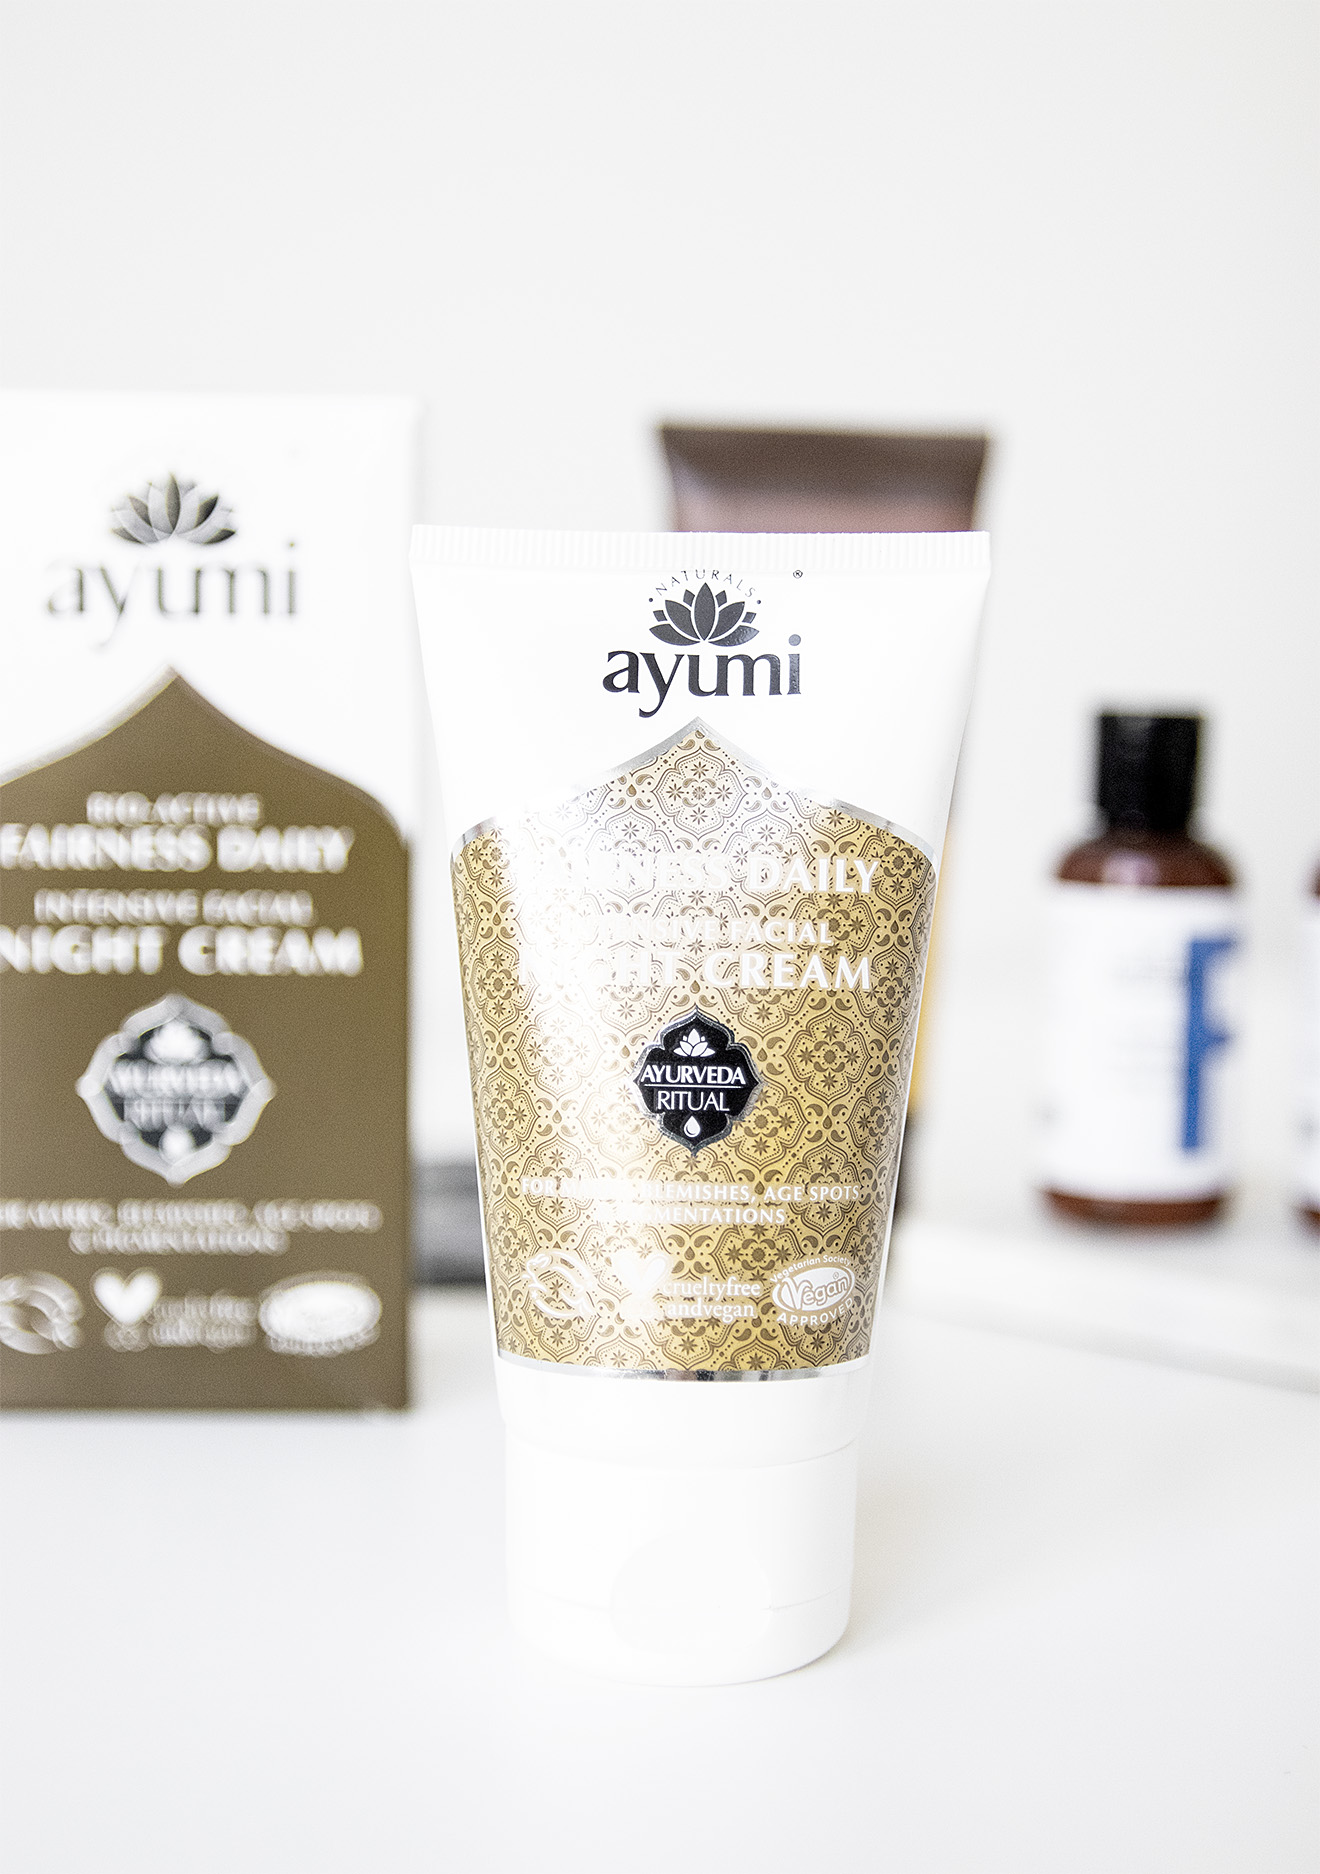 Ayumi Fairness Daily Intensive Night Cream